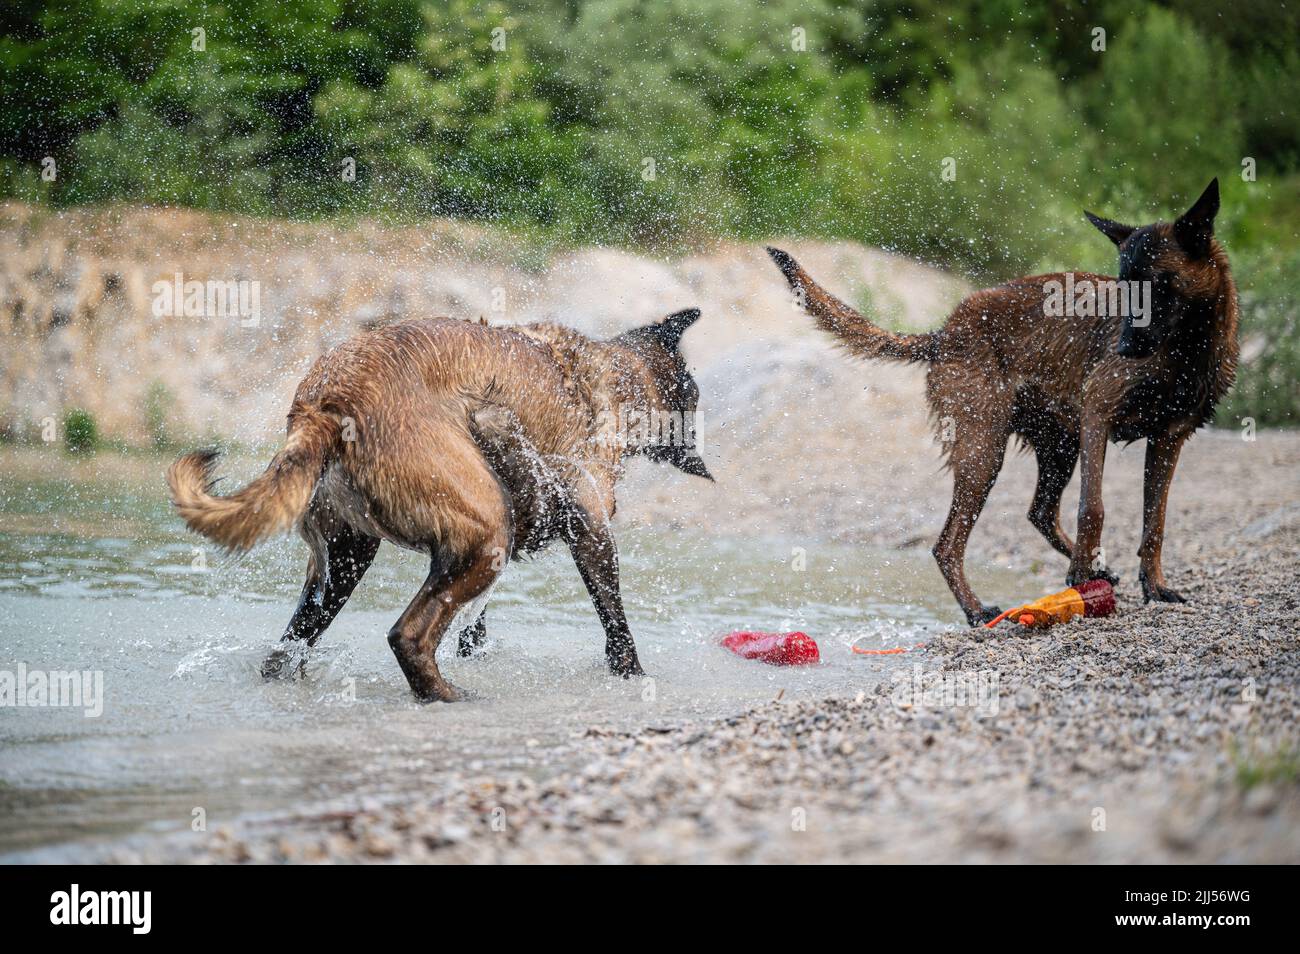 Dos perros malinois belgas de pura raza jugaban junto al lago, sacudiendo el agua. Foto de stock